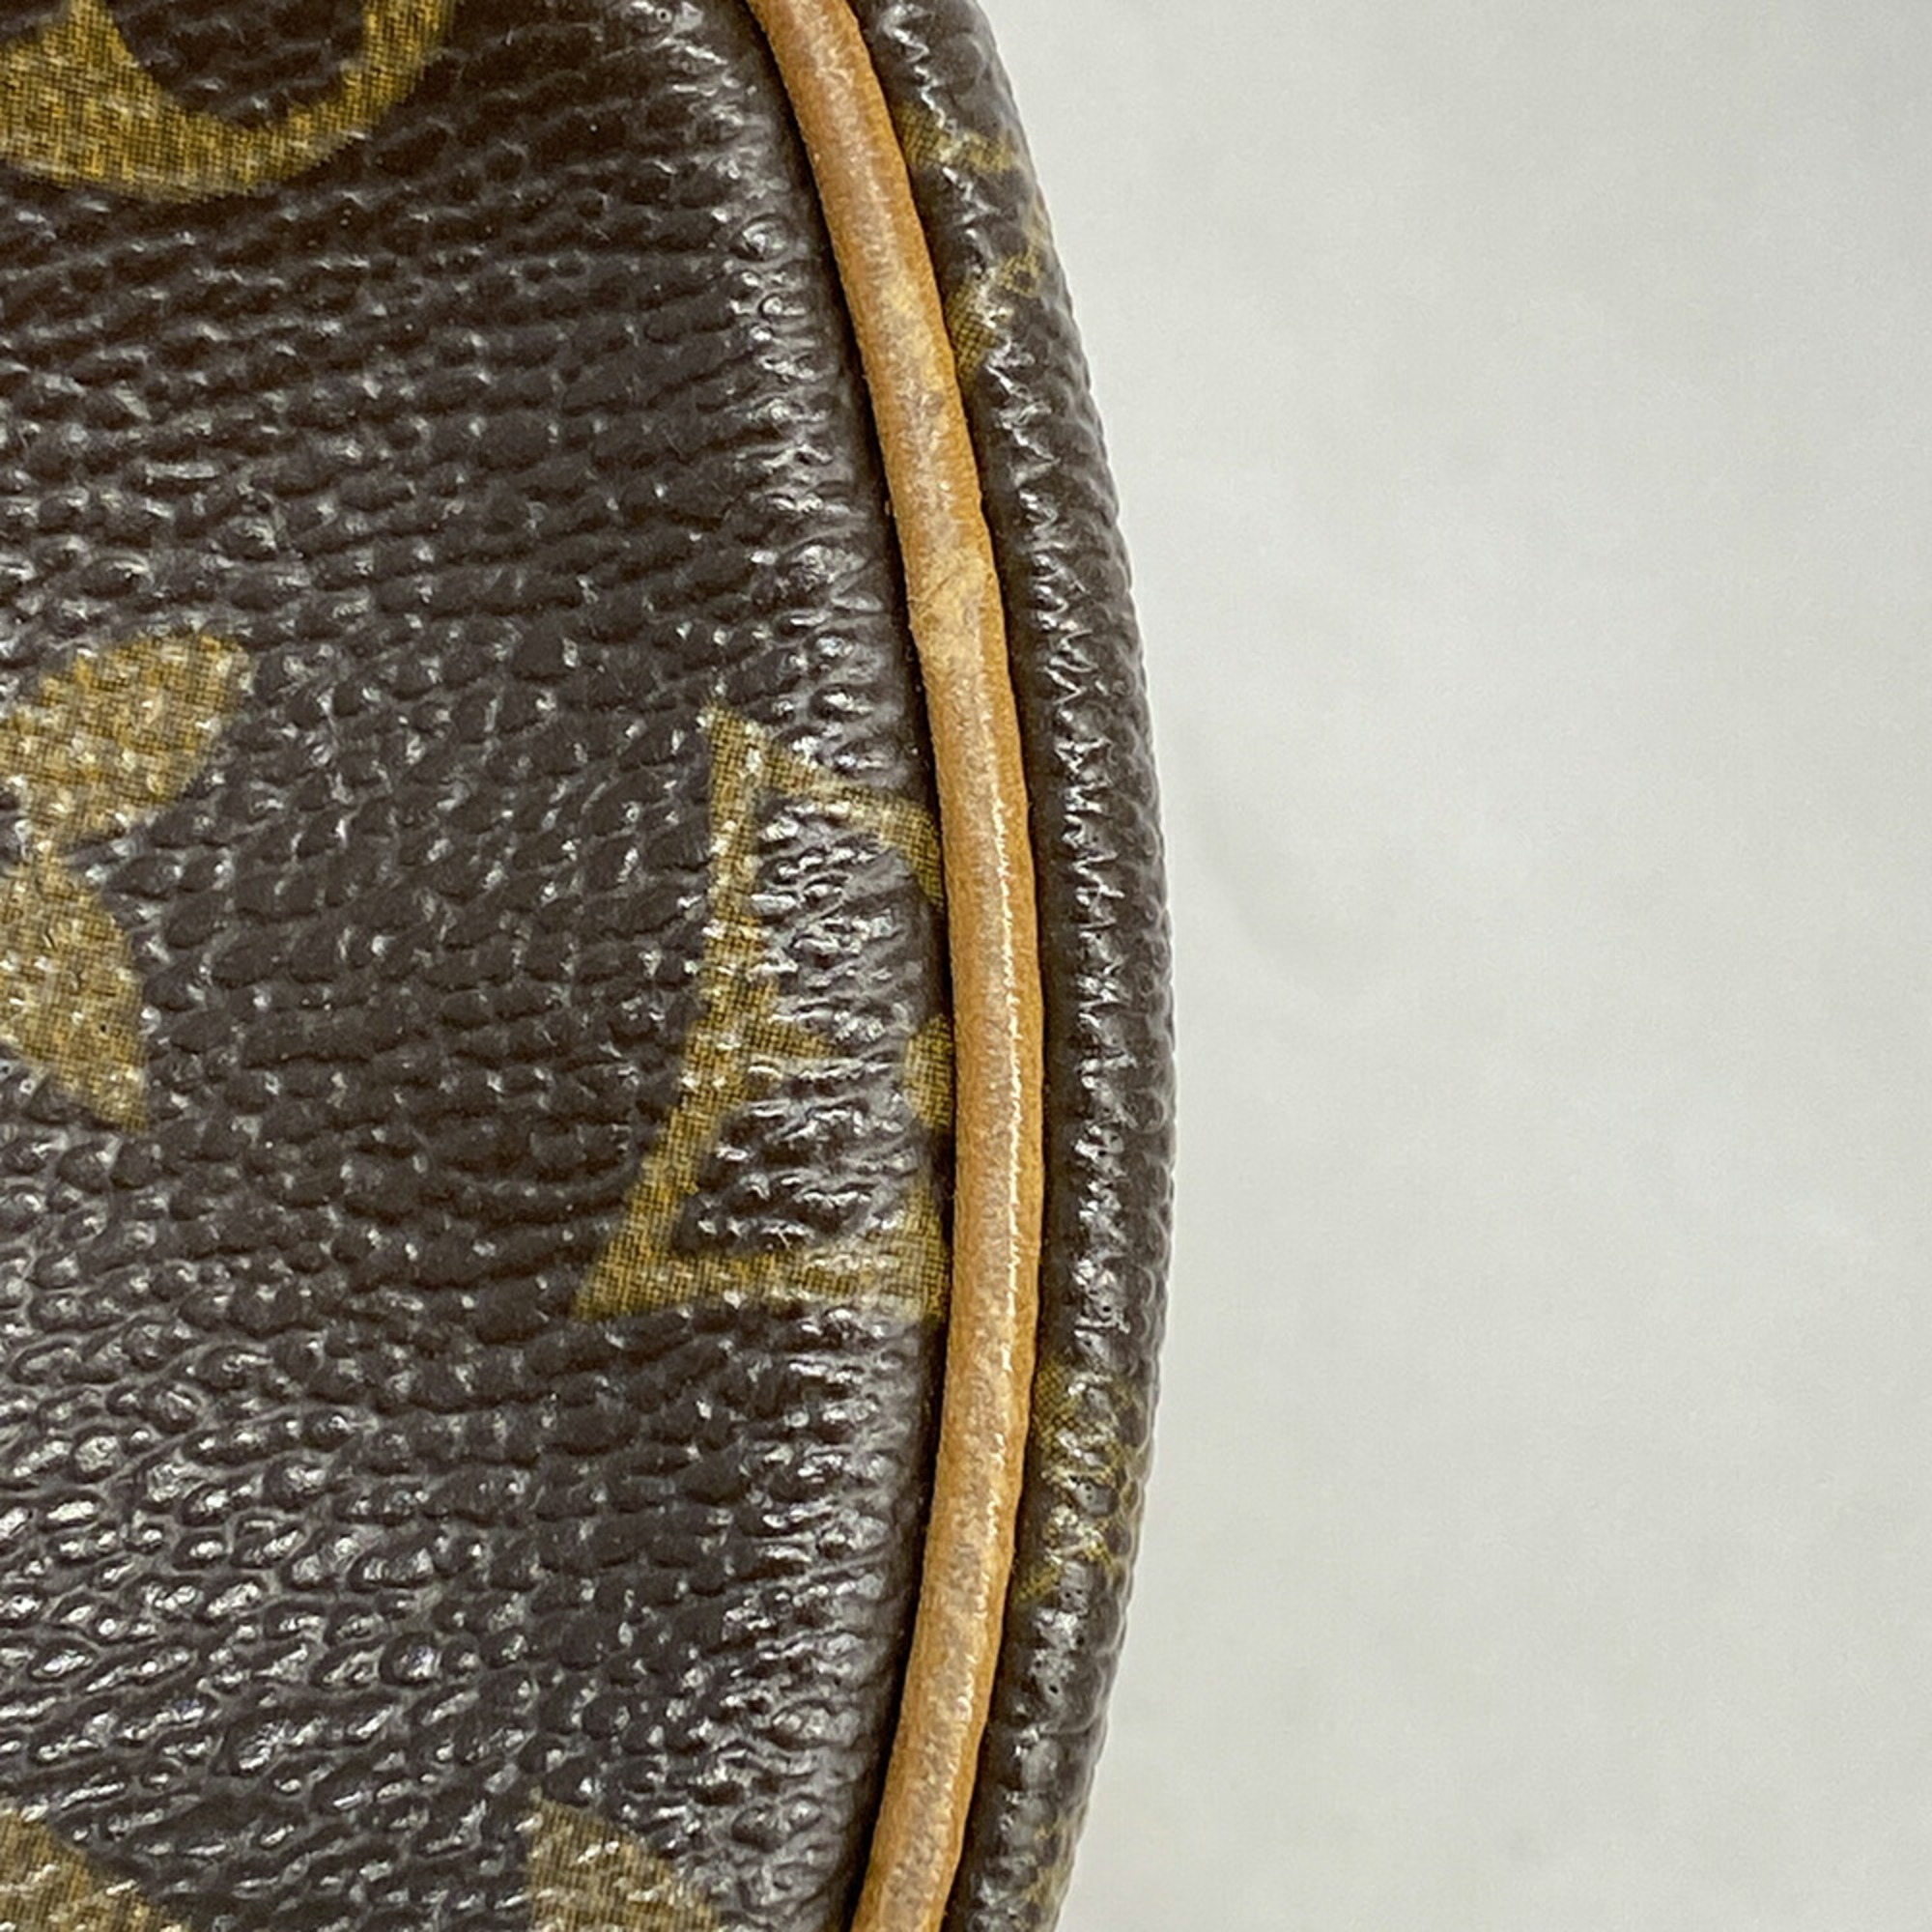 ルイ・ヴィトン(Louis Vuitton) ルイ・ヴィトン ショルダーバッグ モノグラム タンブラン M51179 ブラウンレディース